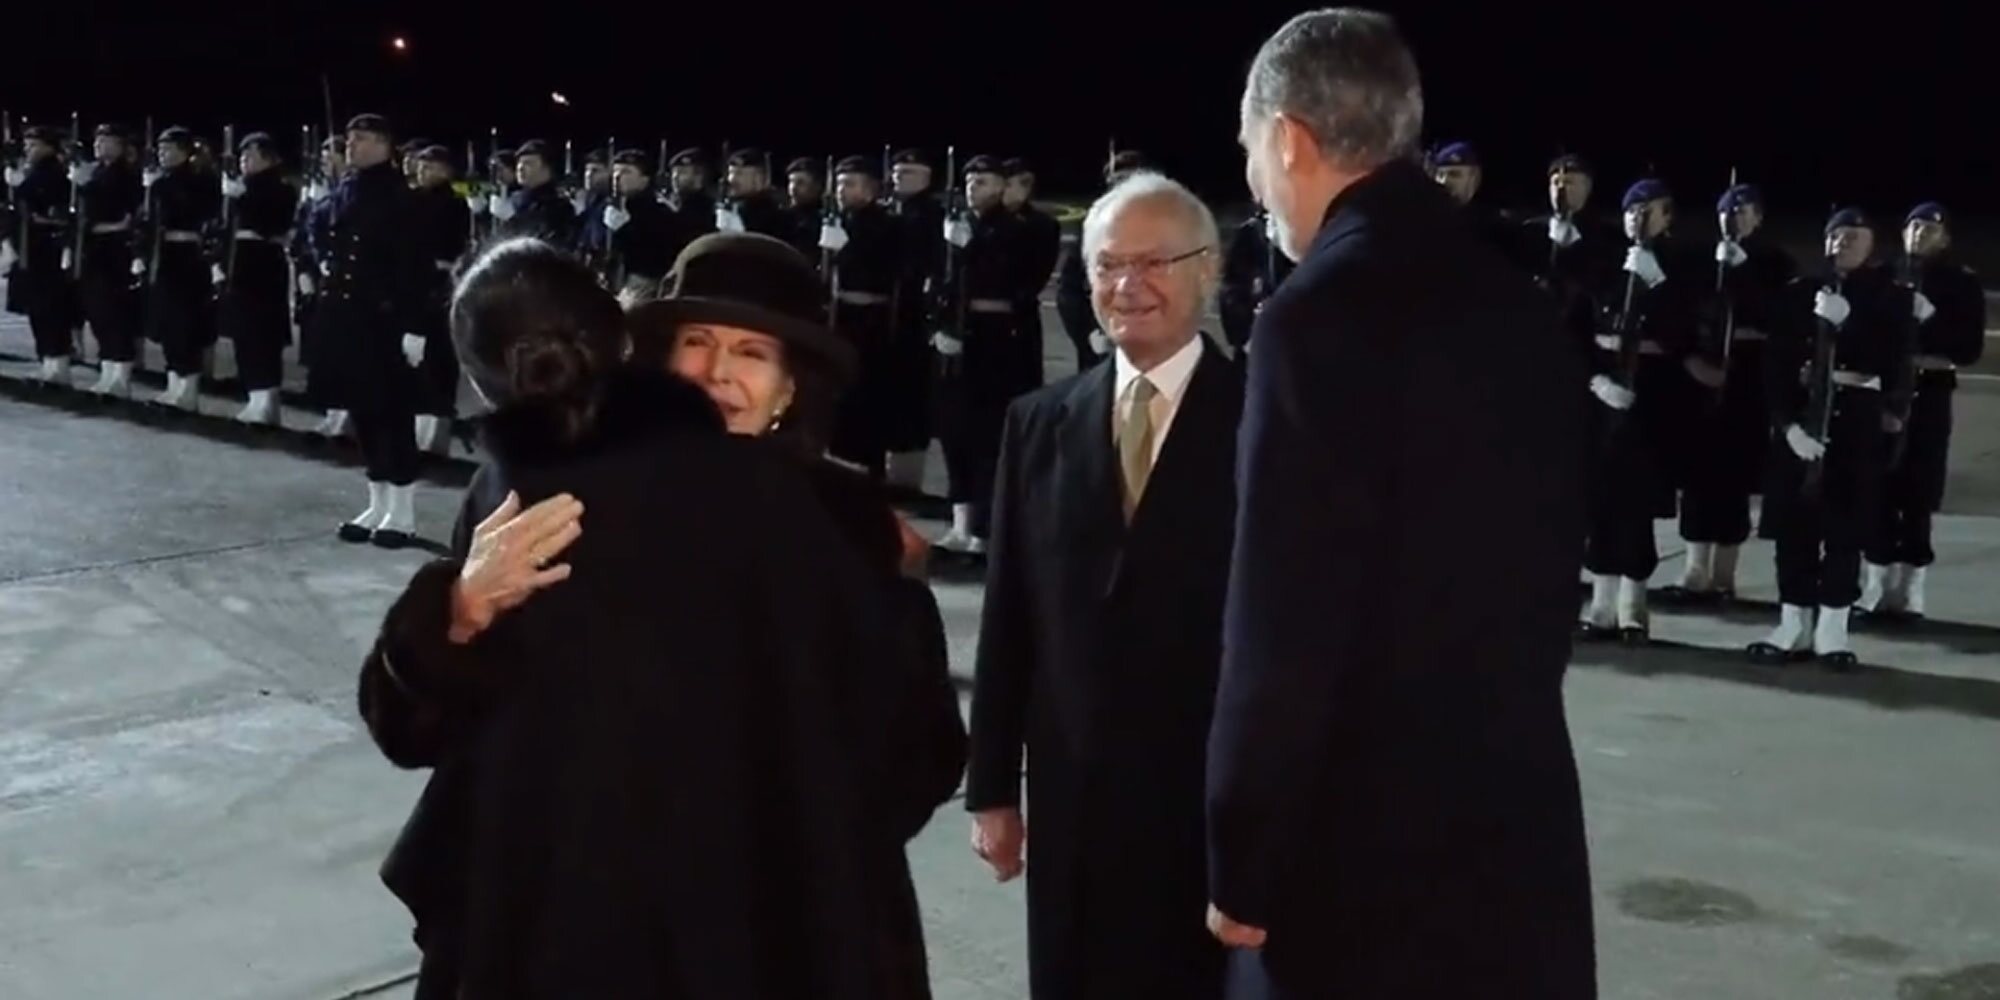 La cariñosa despedida de la Familia Real Sueca a los Reyes Felipe y Letizia tras su exitosa Visita de Estado